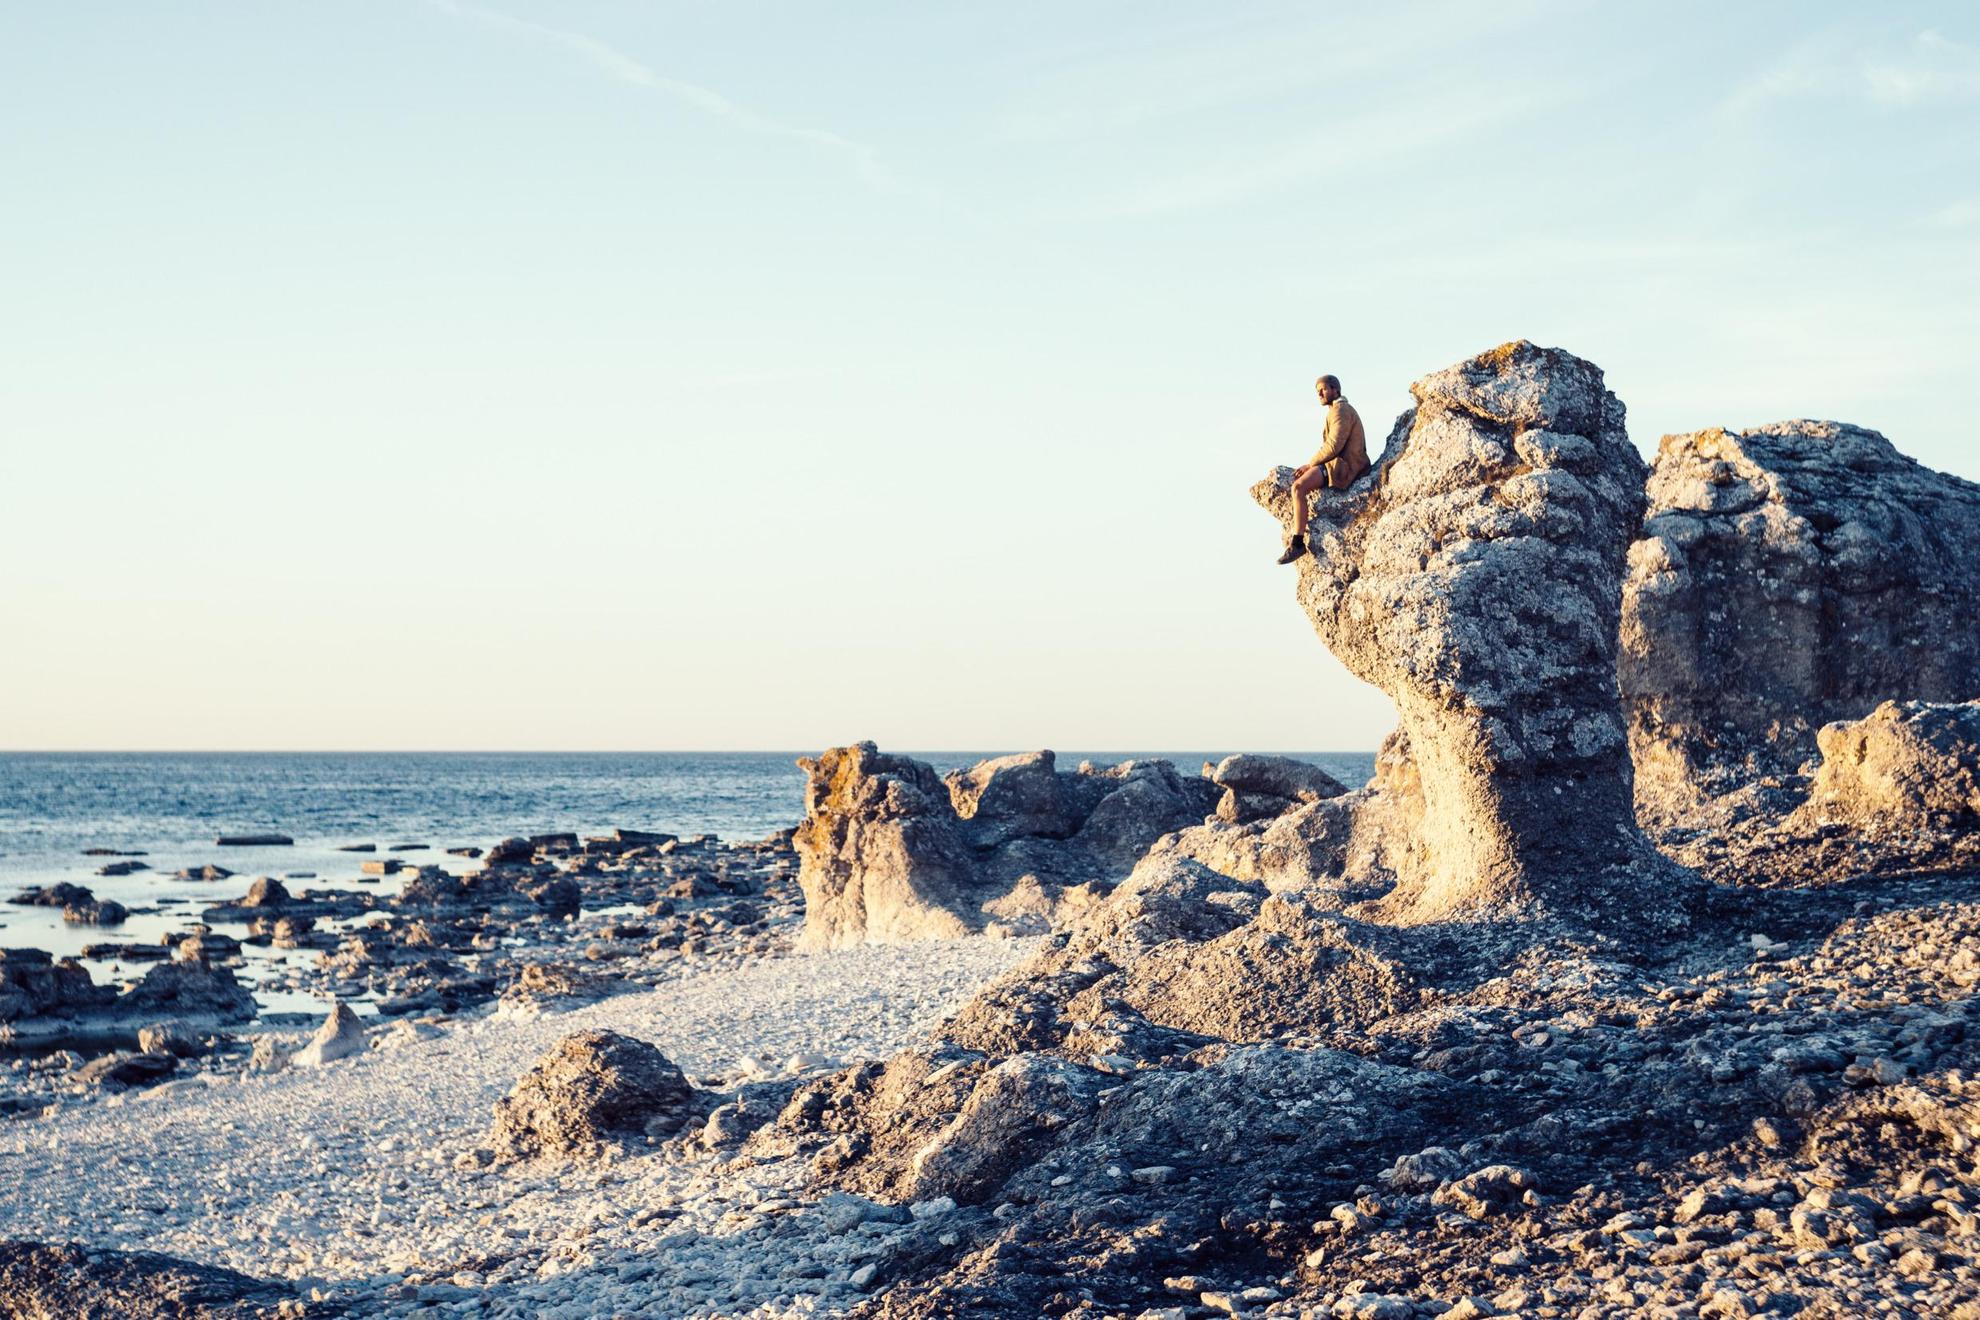 Kalksteen monolieten met de zee op de achtergrond.